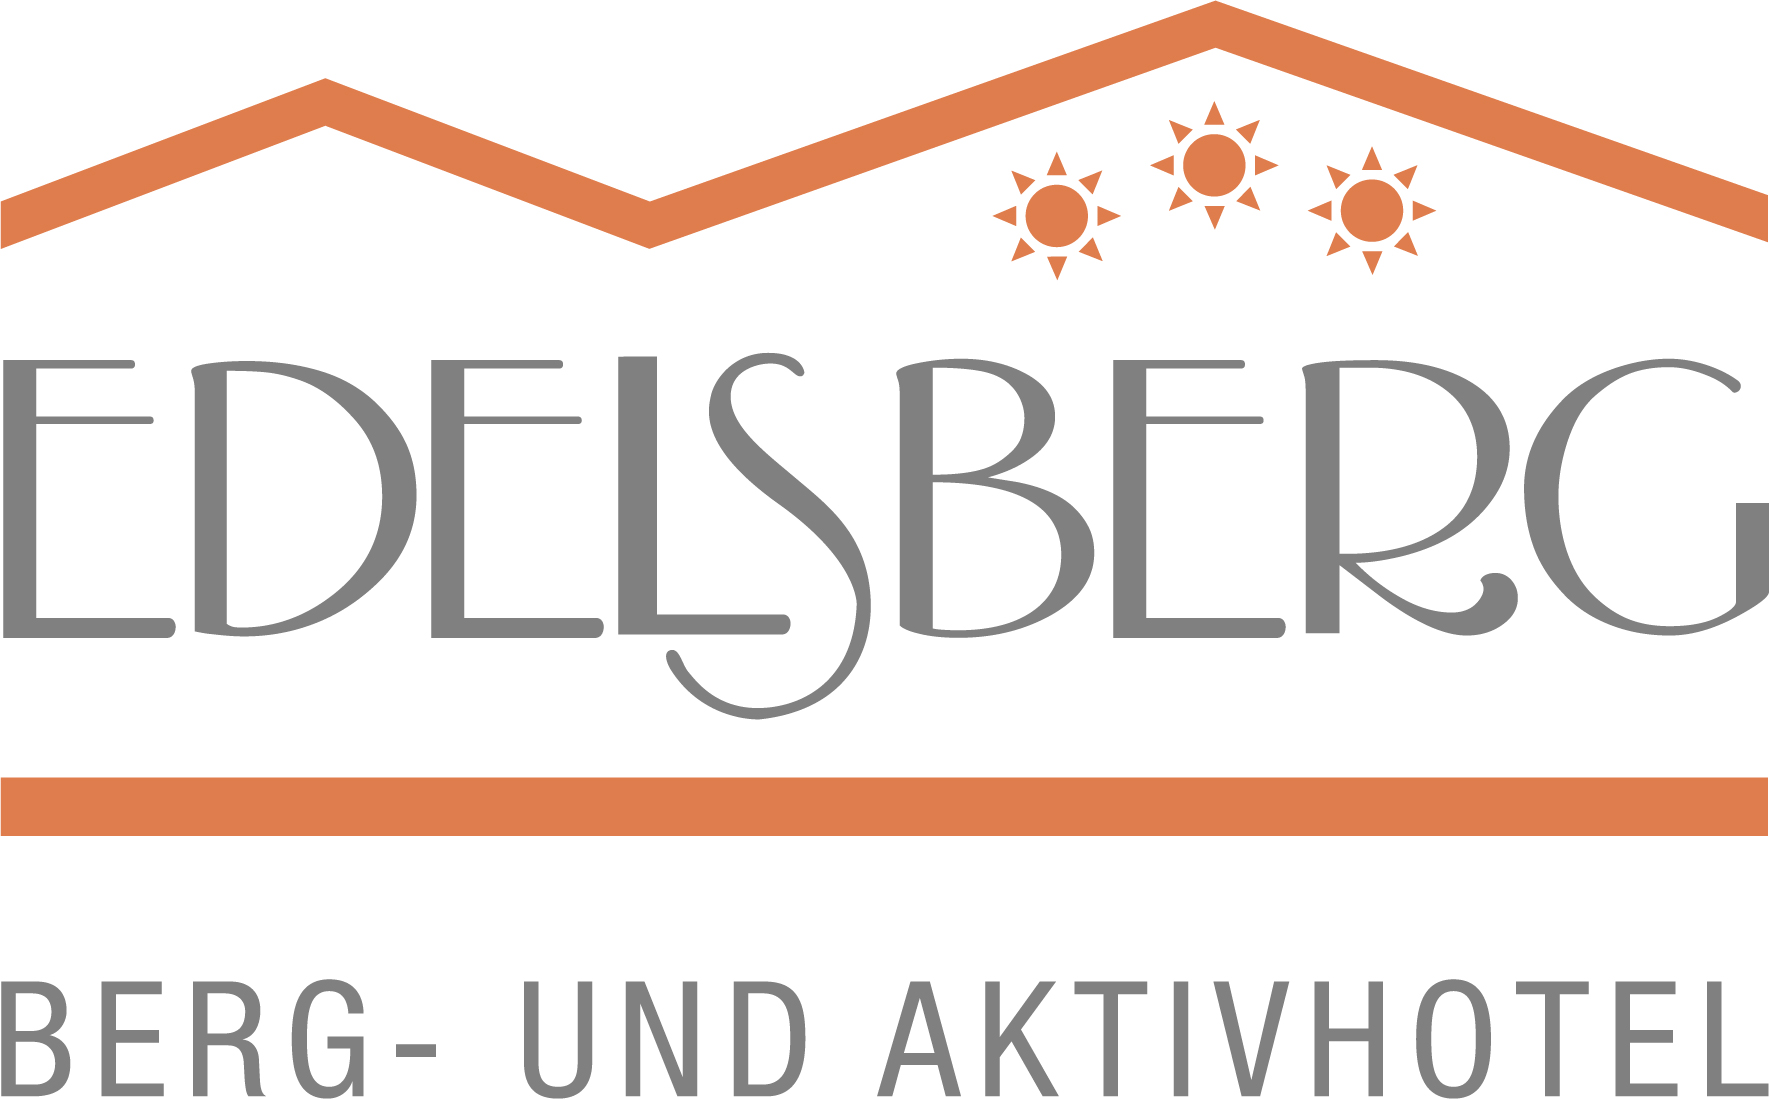 Berg- und Aktivhotel Edelsberg GmbH No Rating